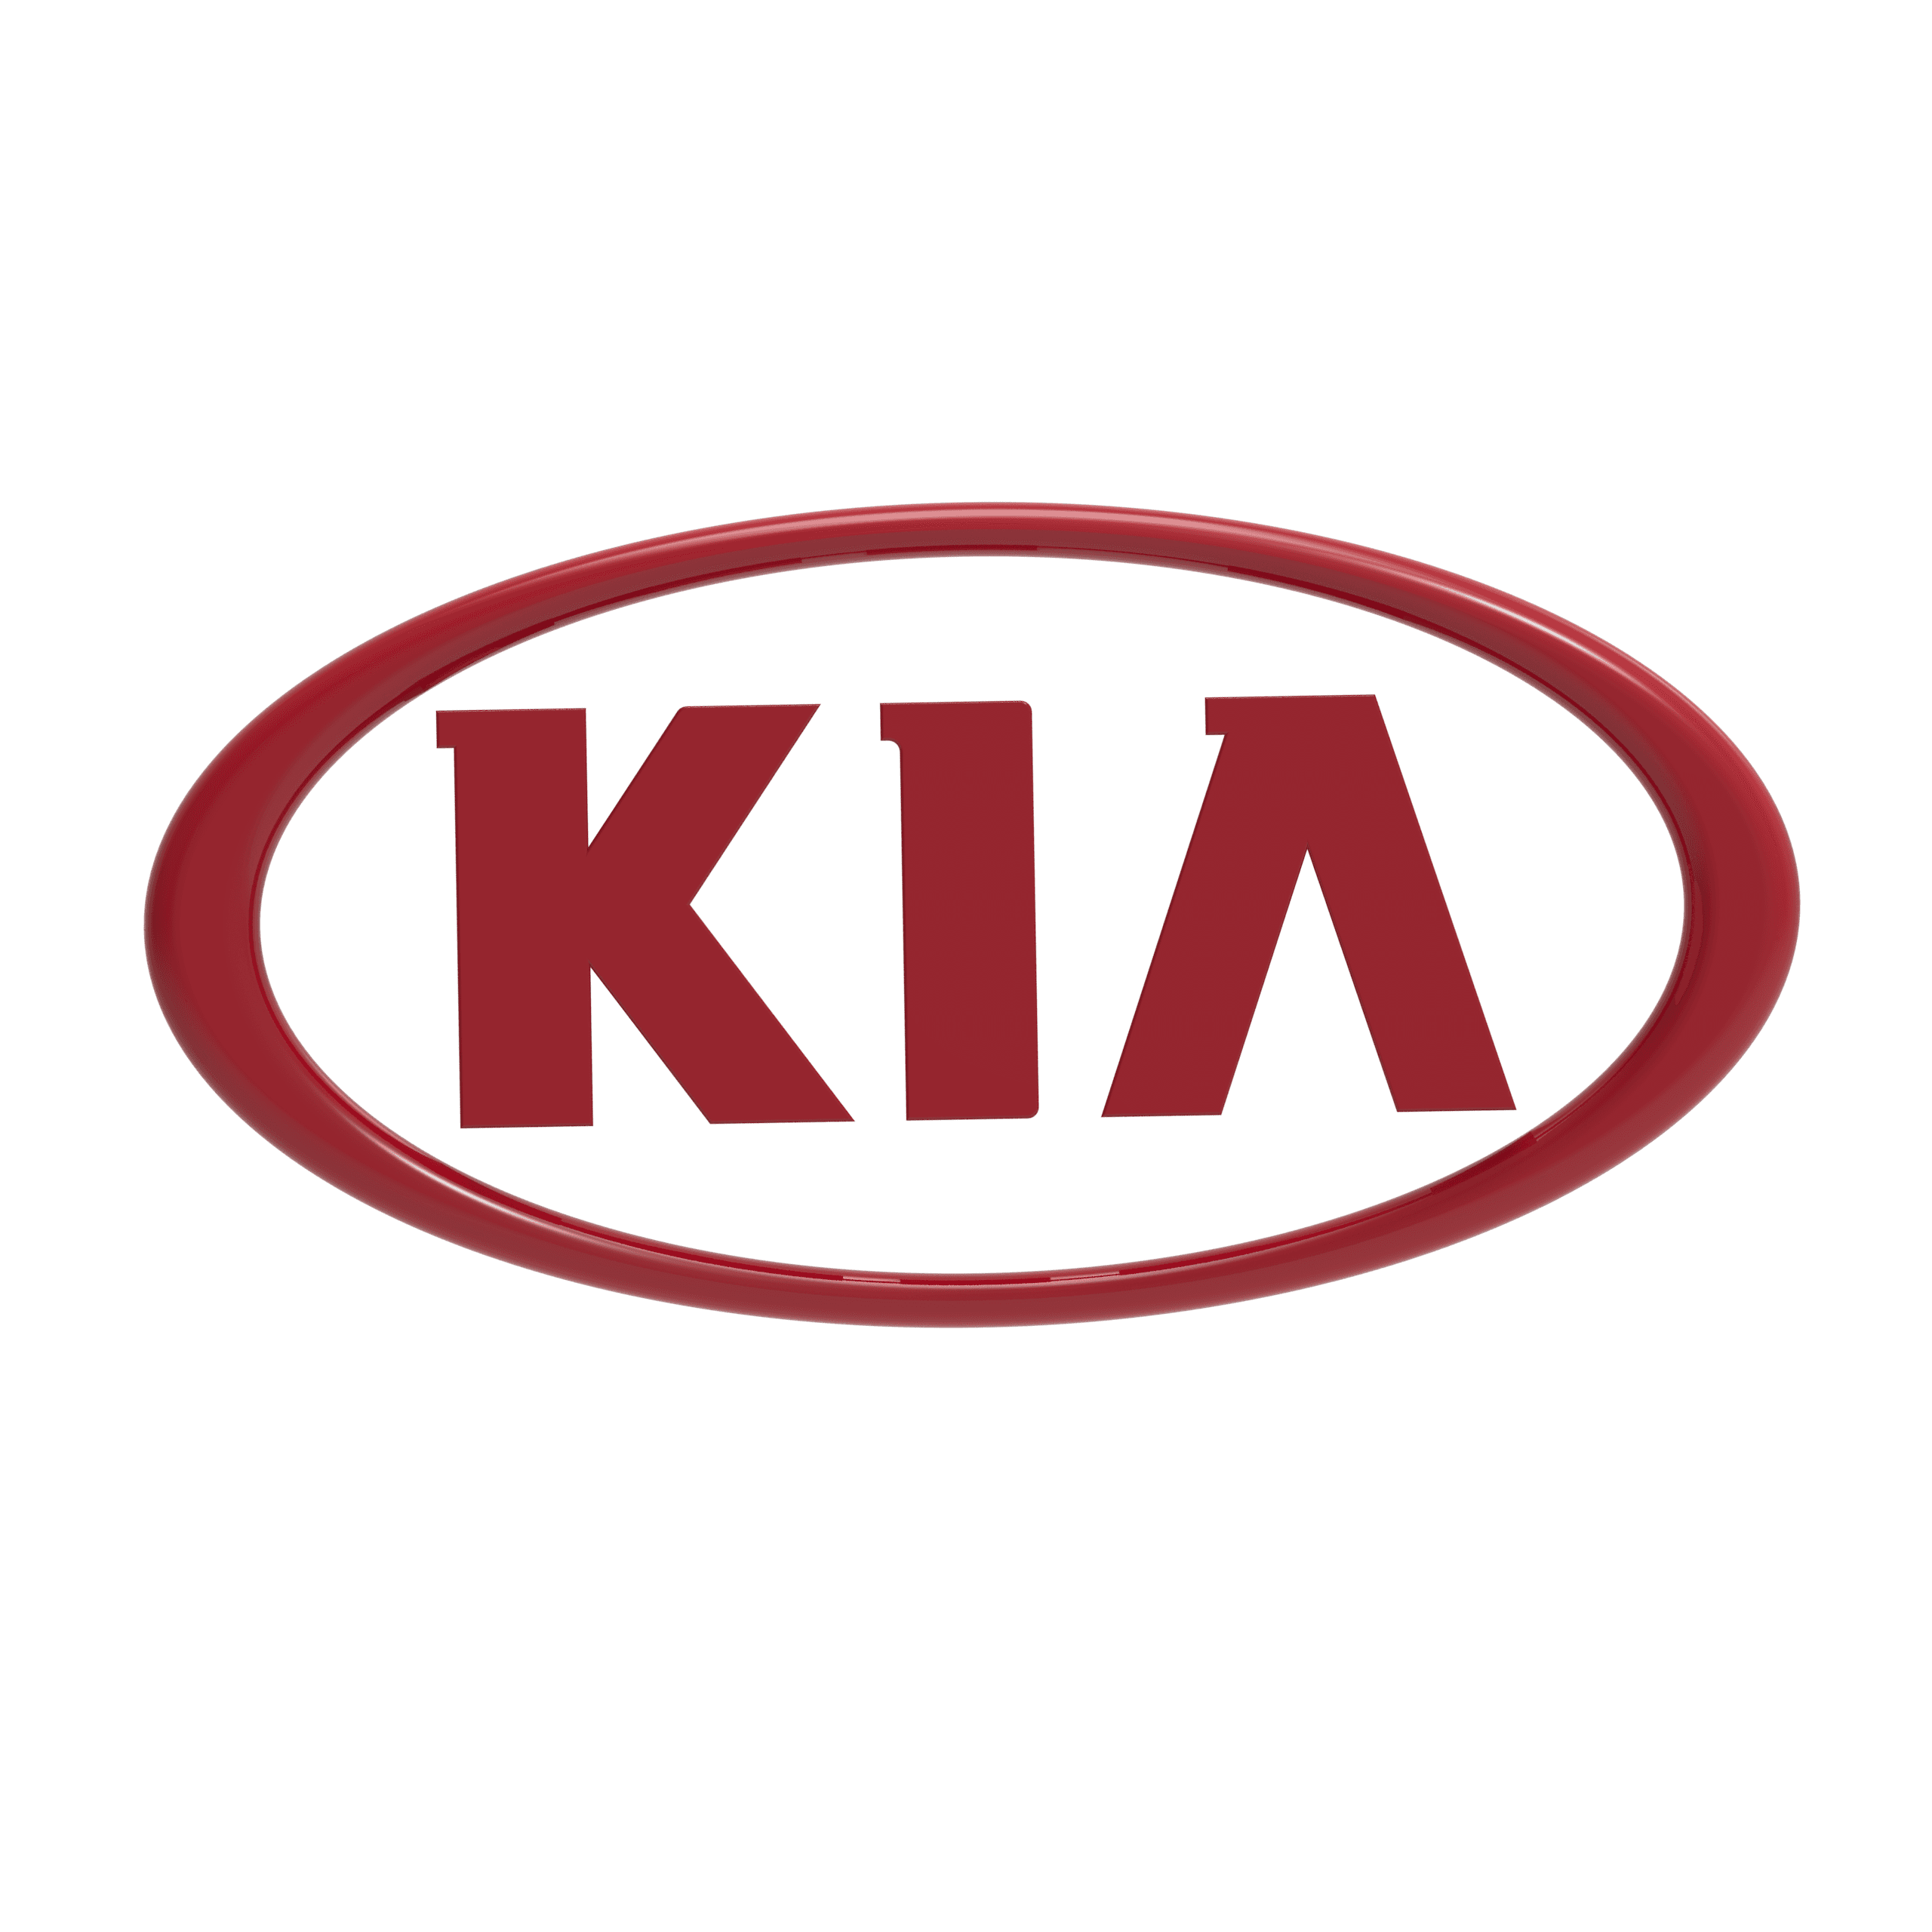  Kia logo 3d model